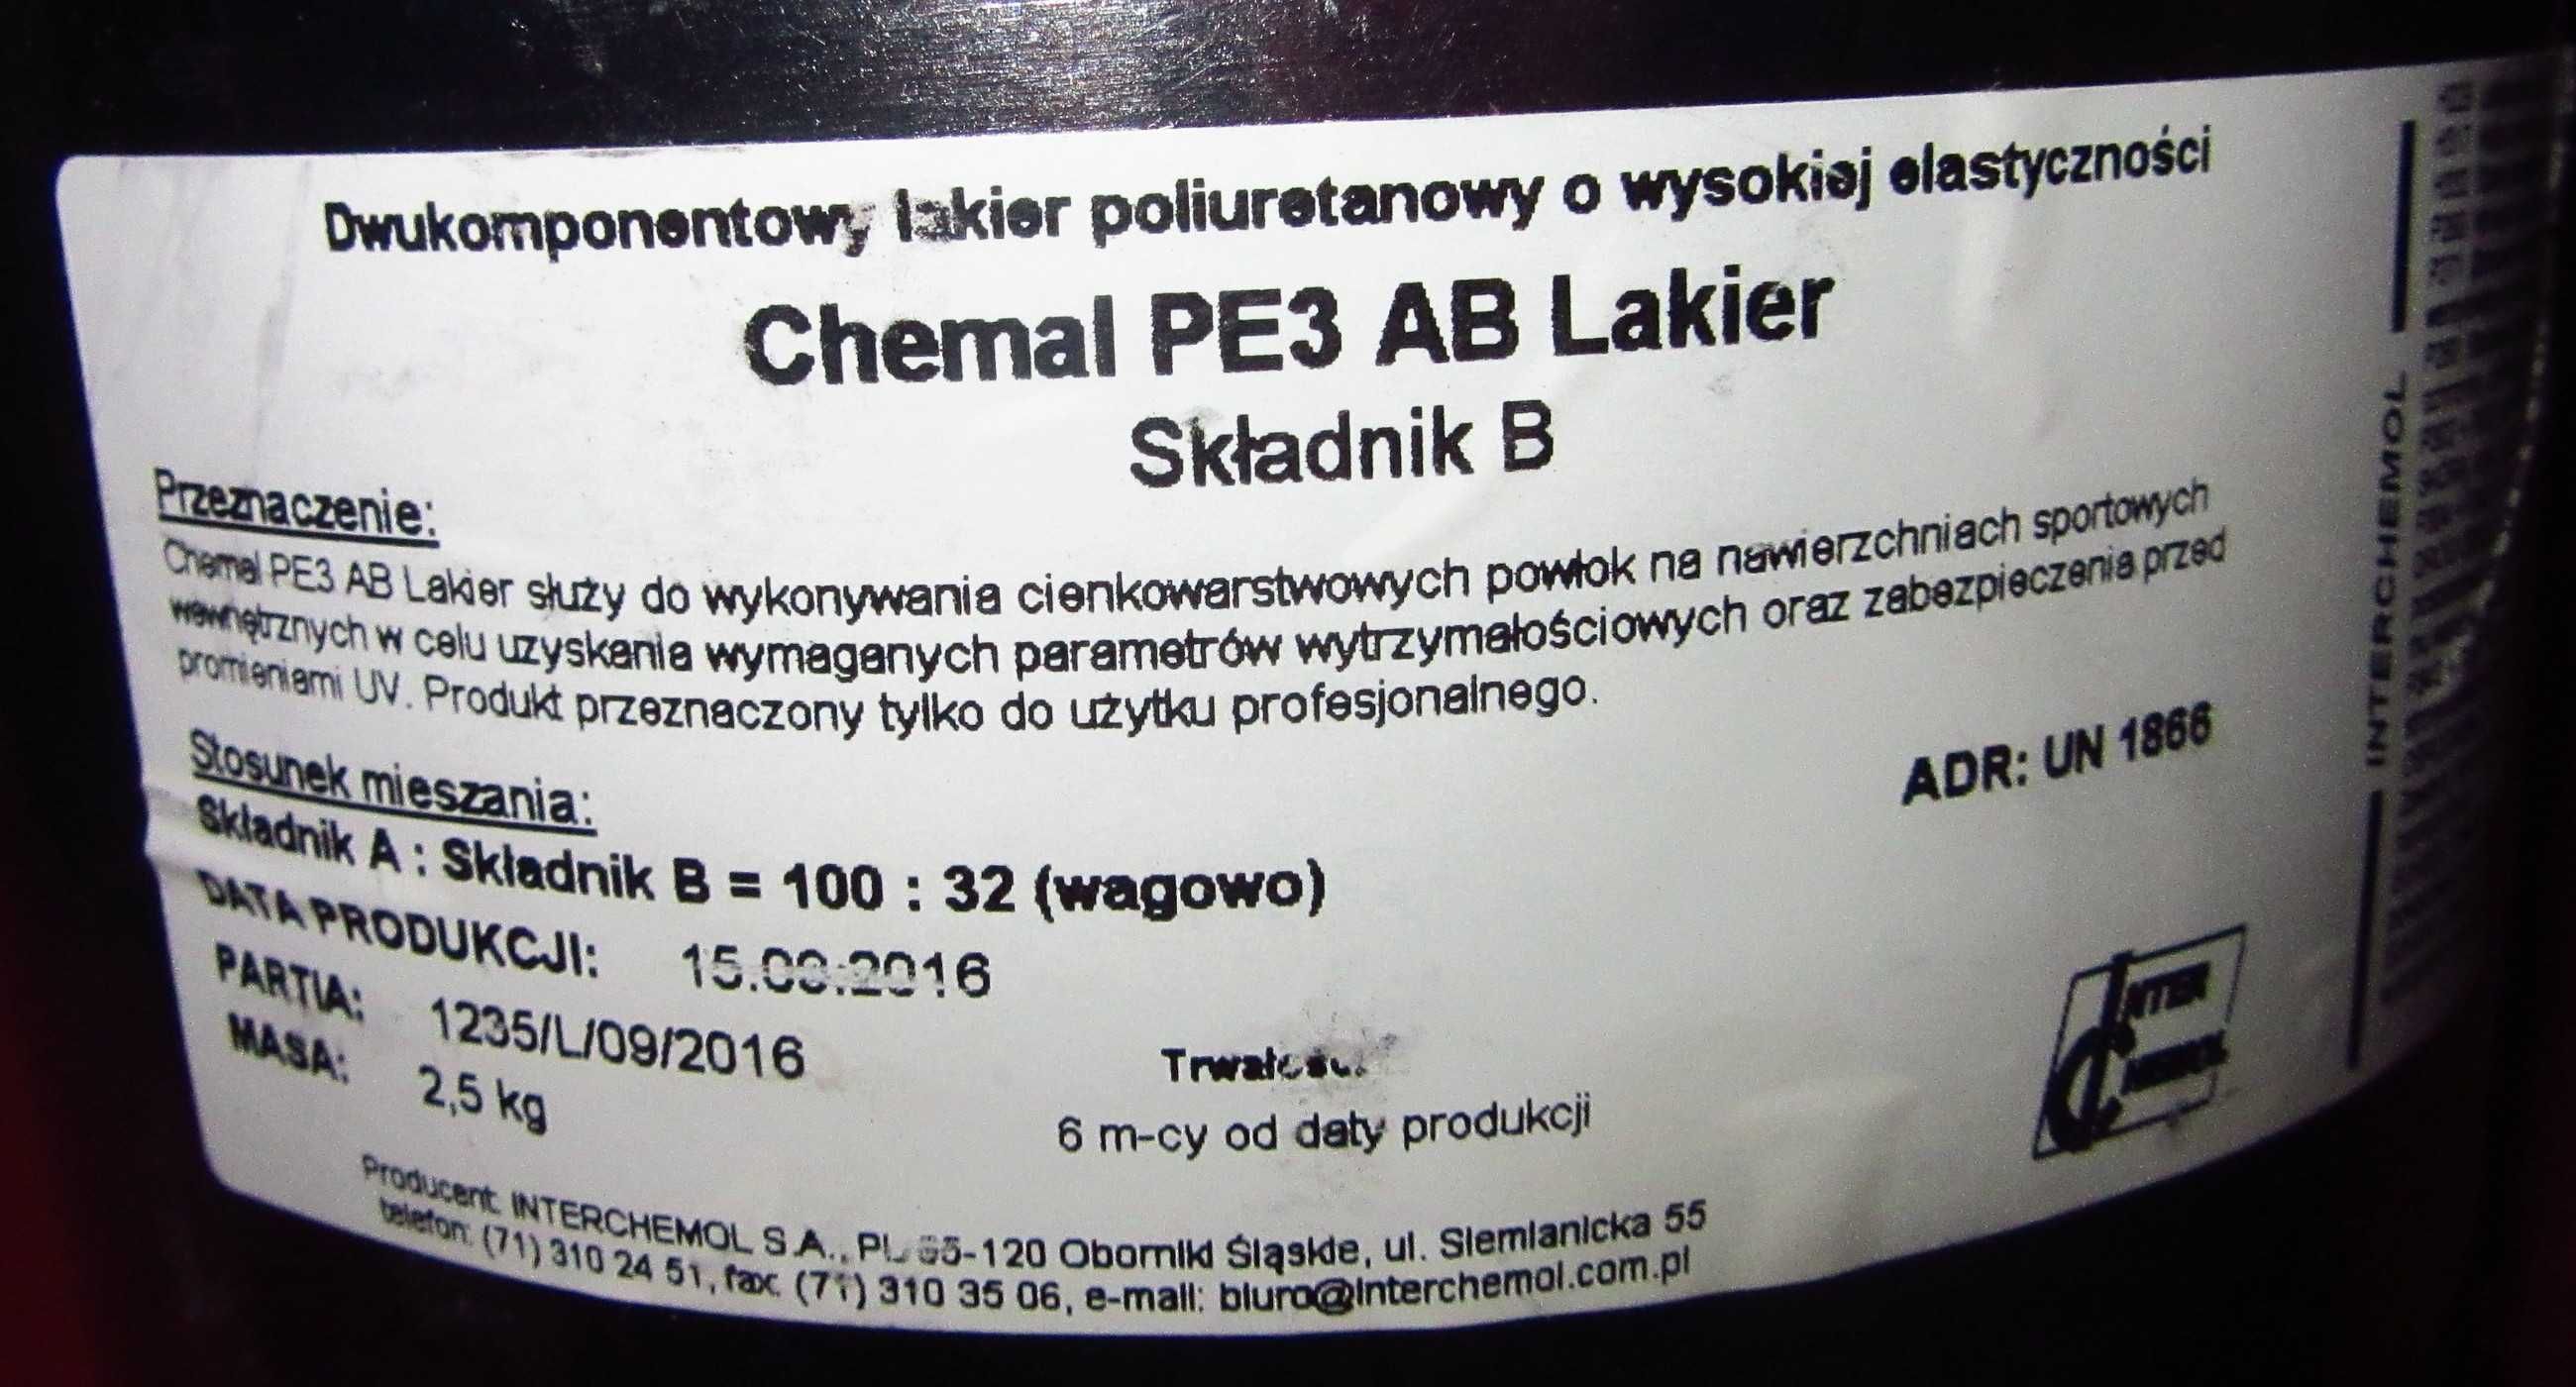 Chemal PE3 AB Lakier Składnik B